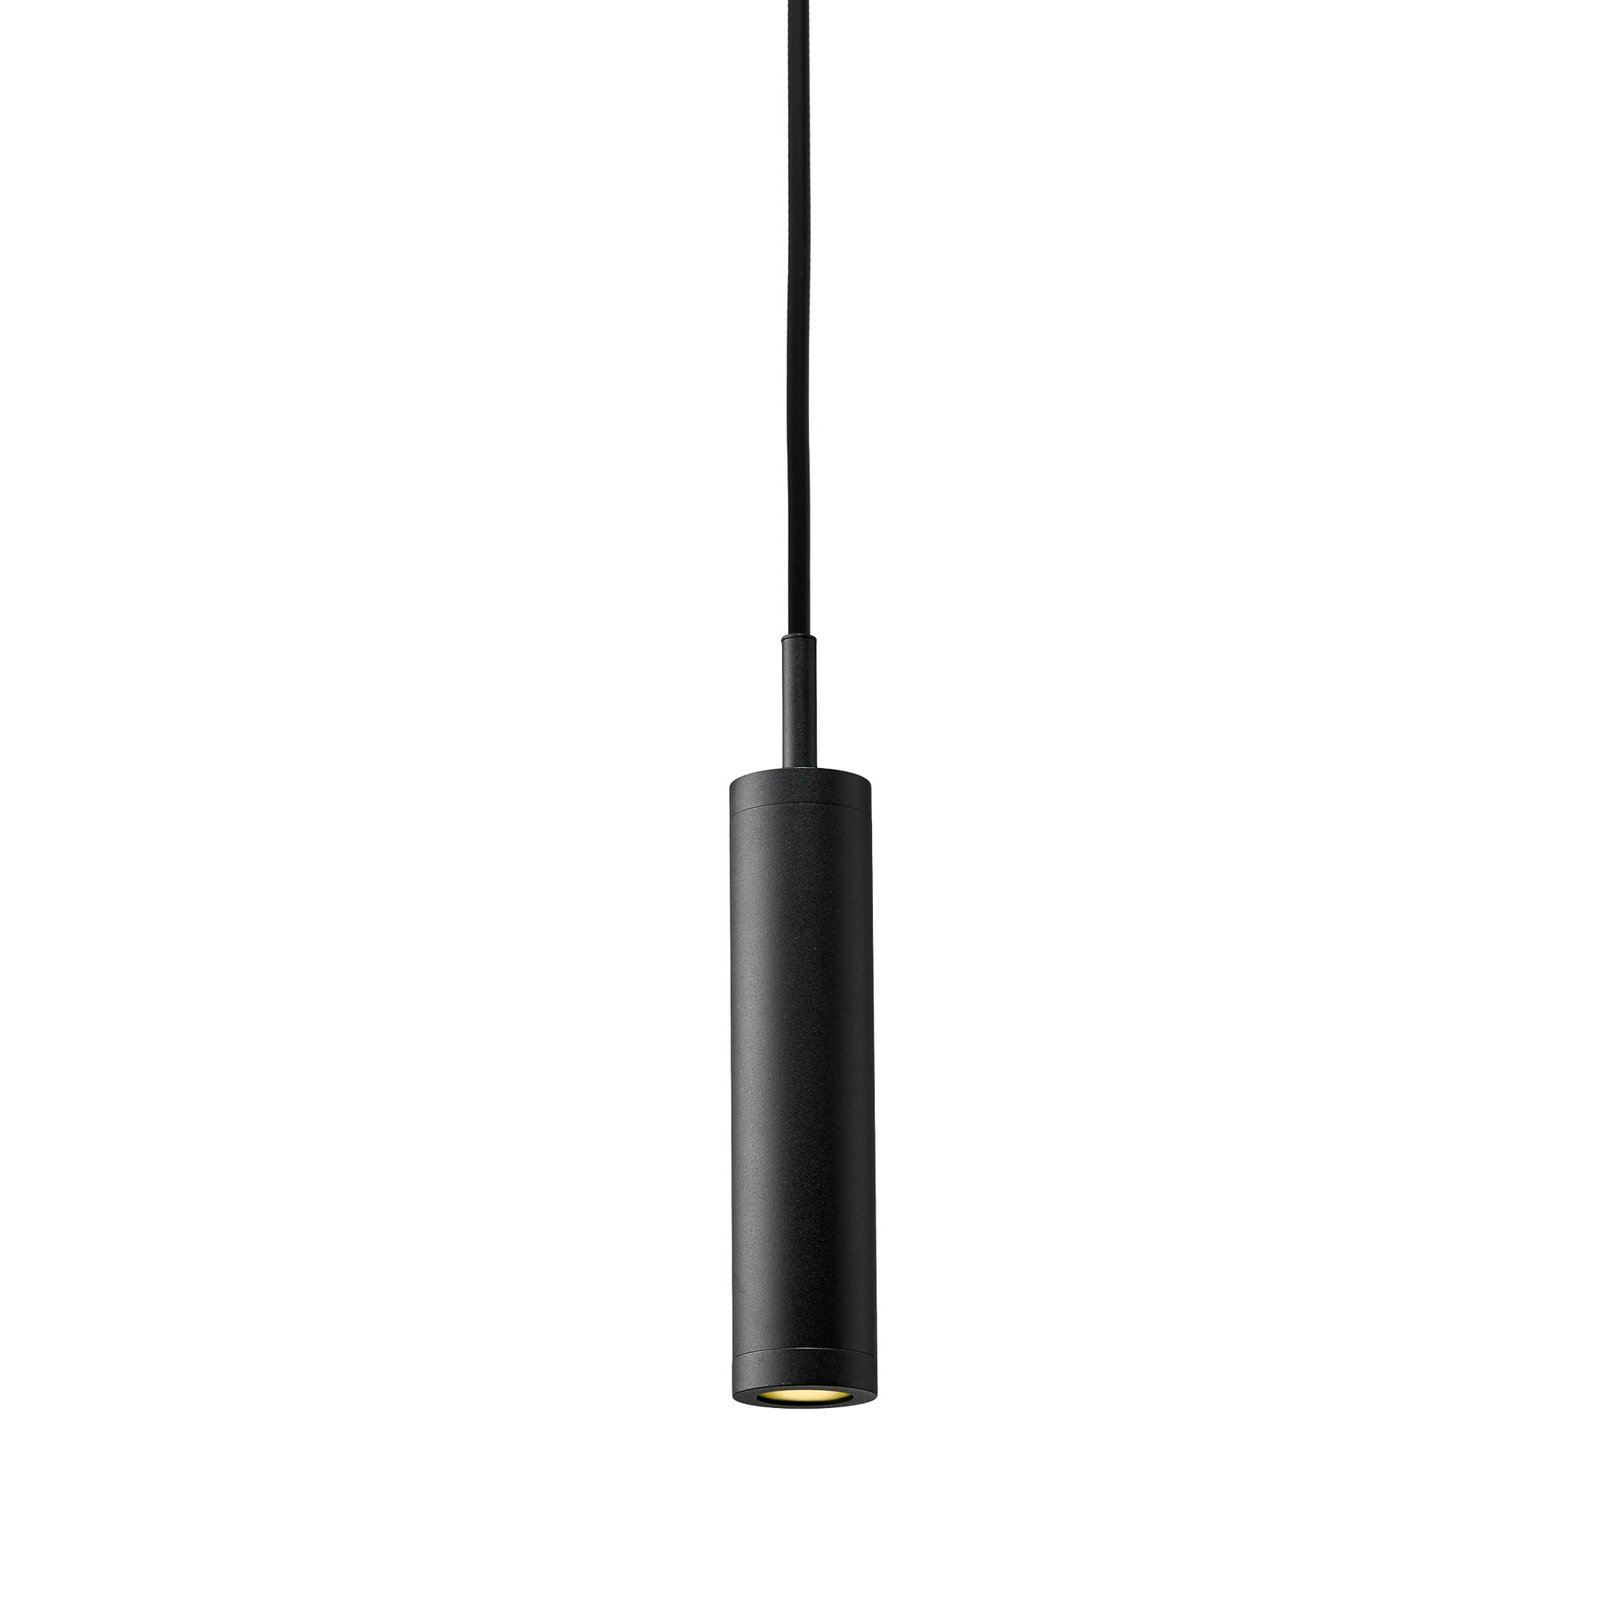 Pakabinamas šviestuvas "Liberty Spot", juodas, aukštis 25 cm